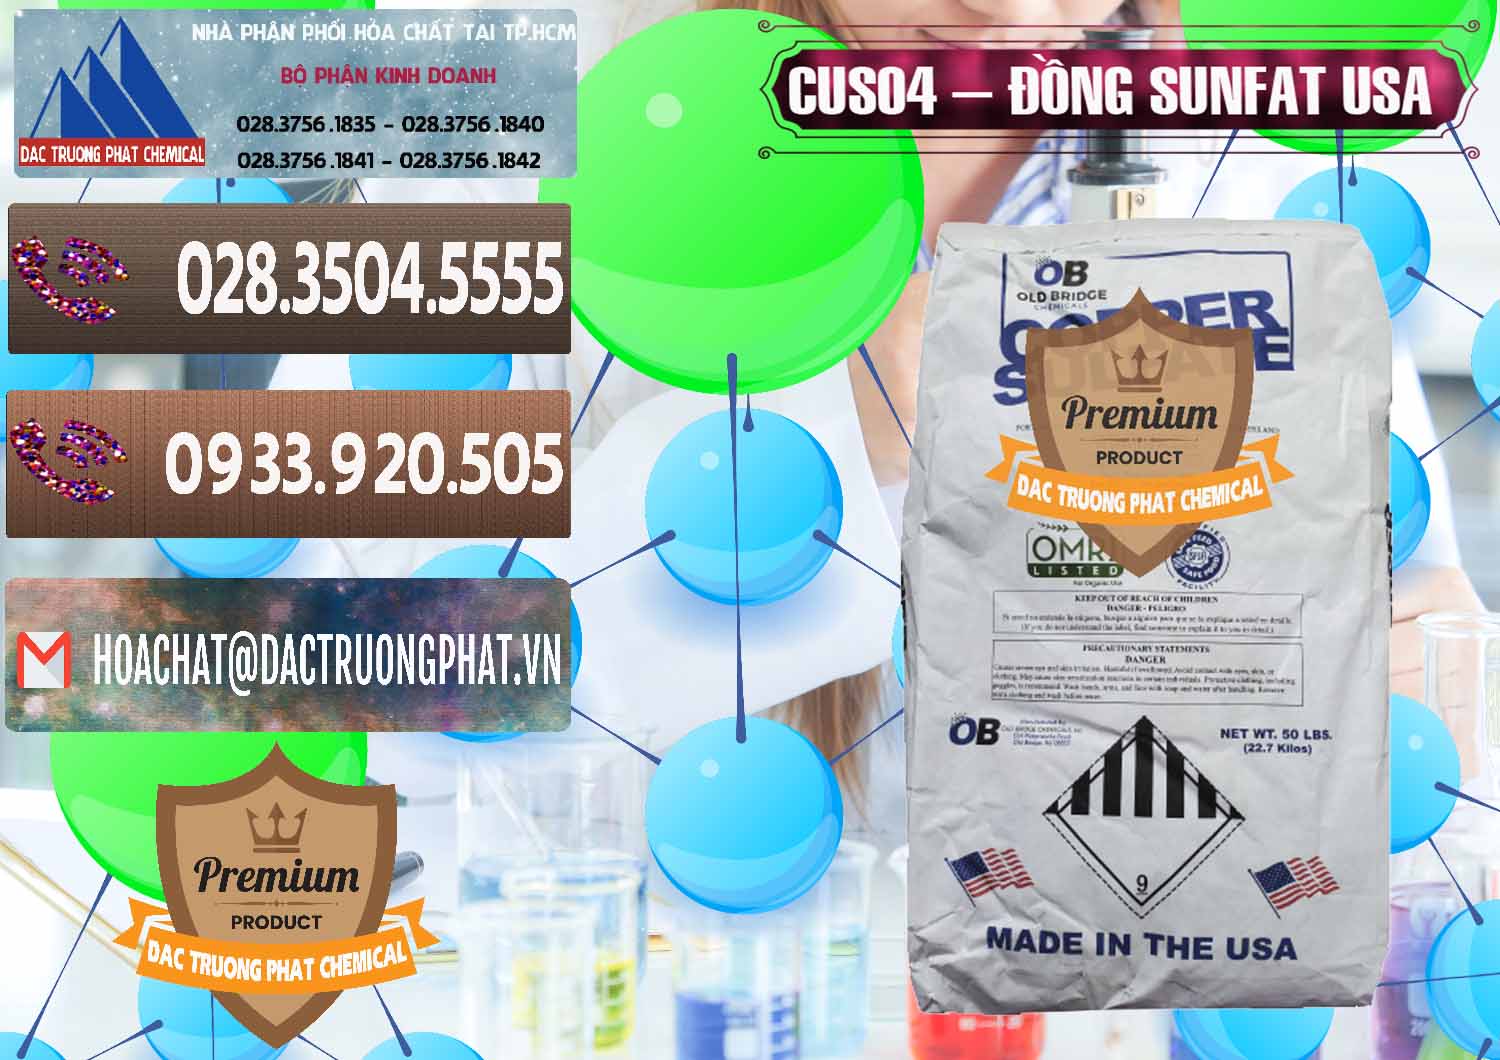 Cty bán & cung ứng CuSO4 – Đồng Sunfat Mỹ USA - 0479 - Nơi cung cấp & phân phối hóa chất tại TP.HCM - hoachatviet.net